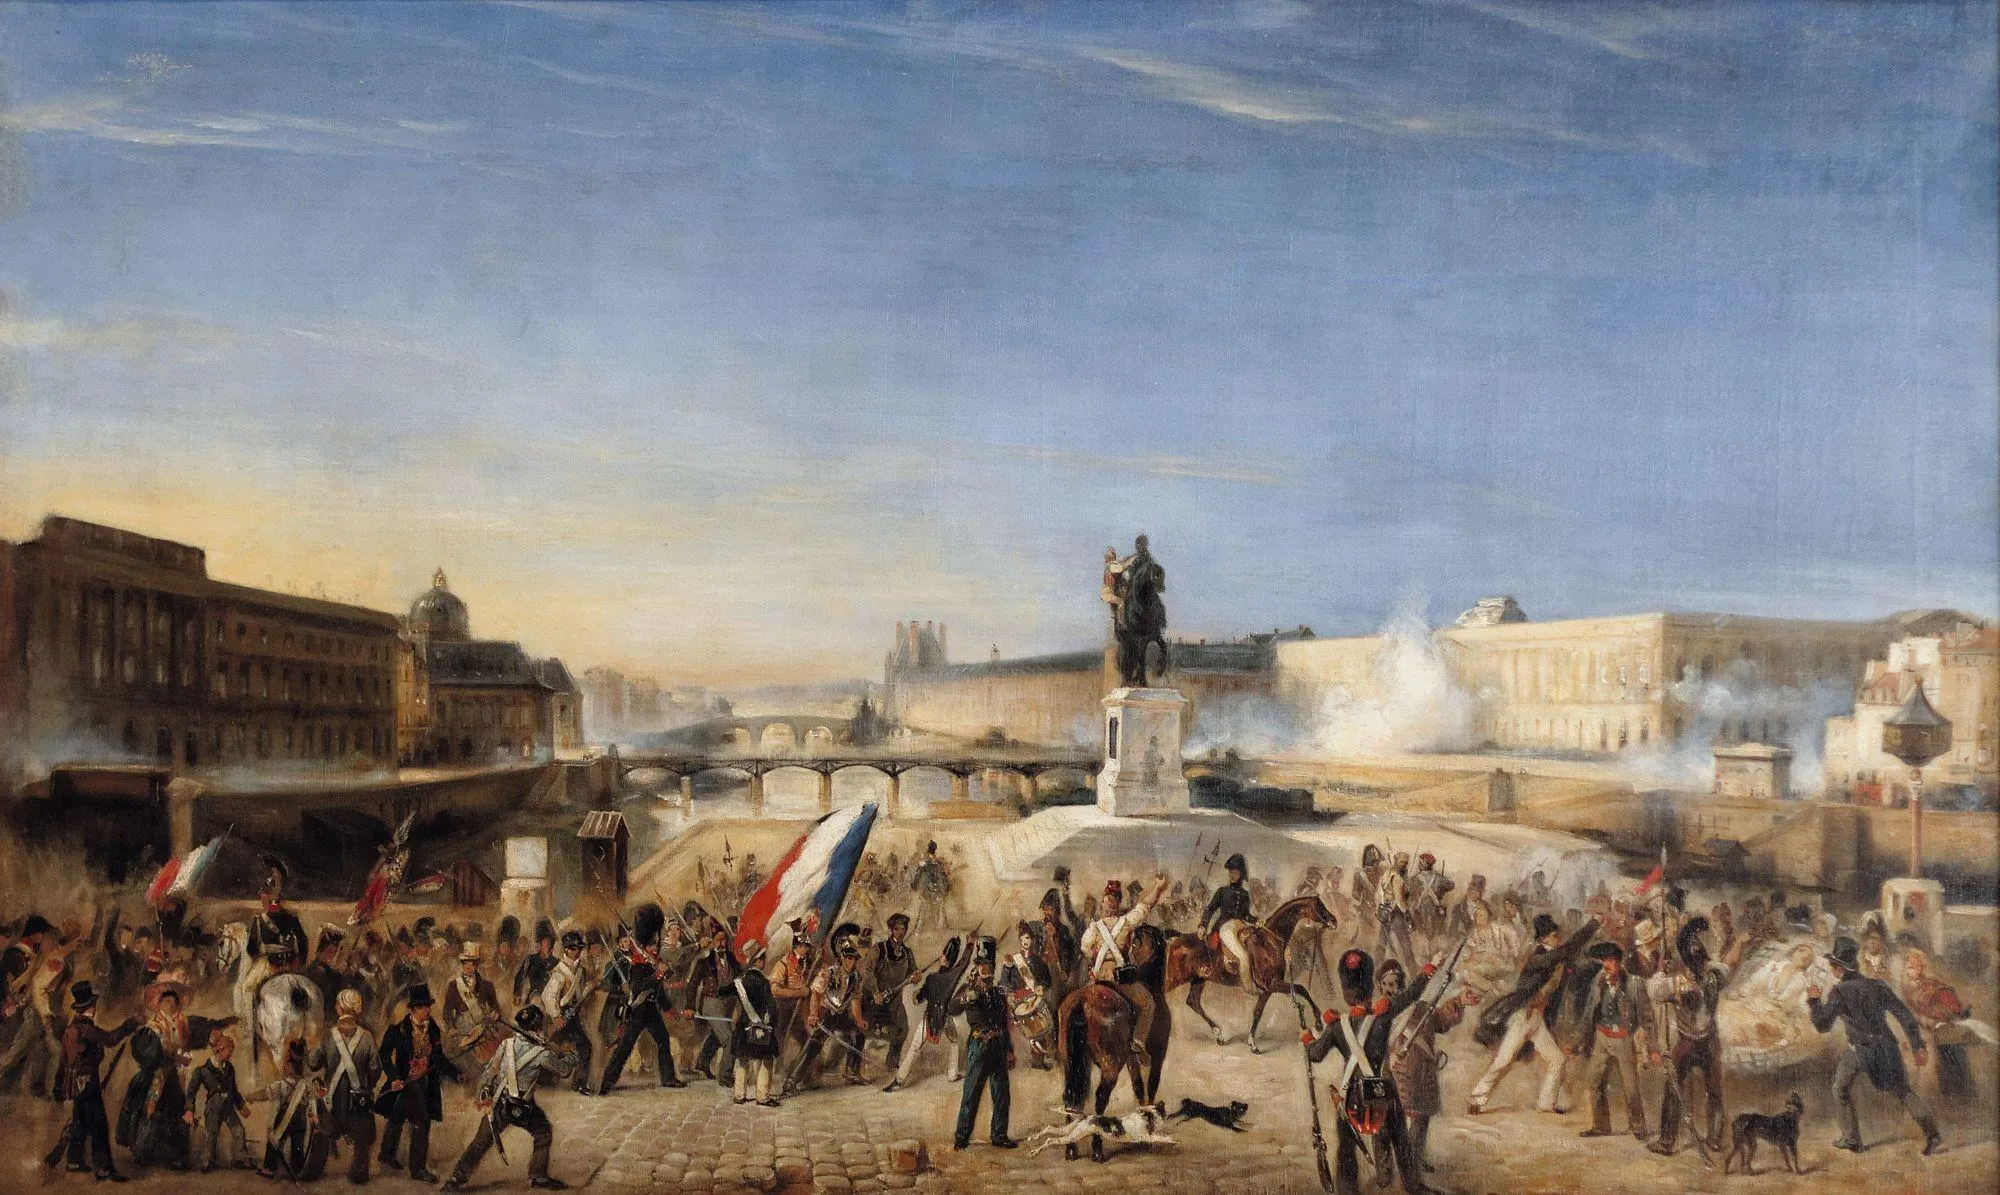 Anonyme, Combats sur le Pont-Neuf en 1830, v. 1830, huile sur toile.